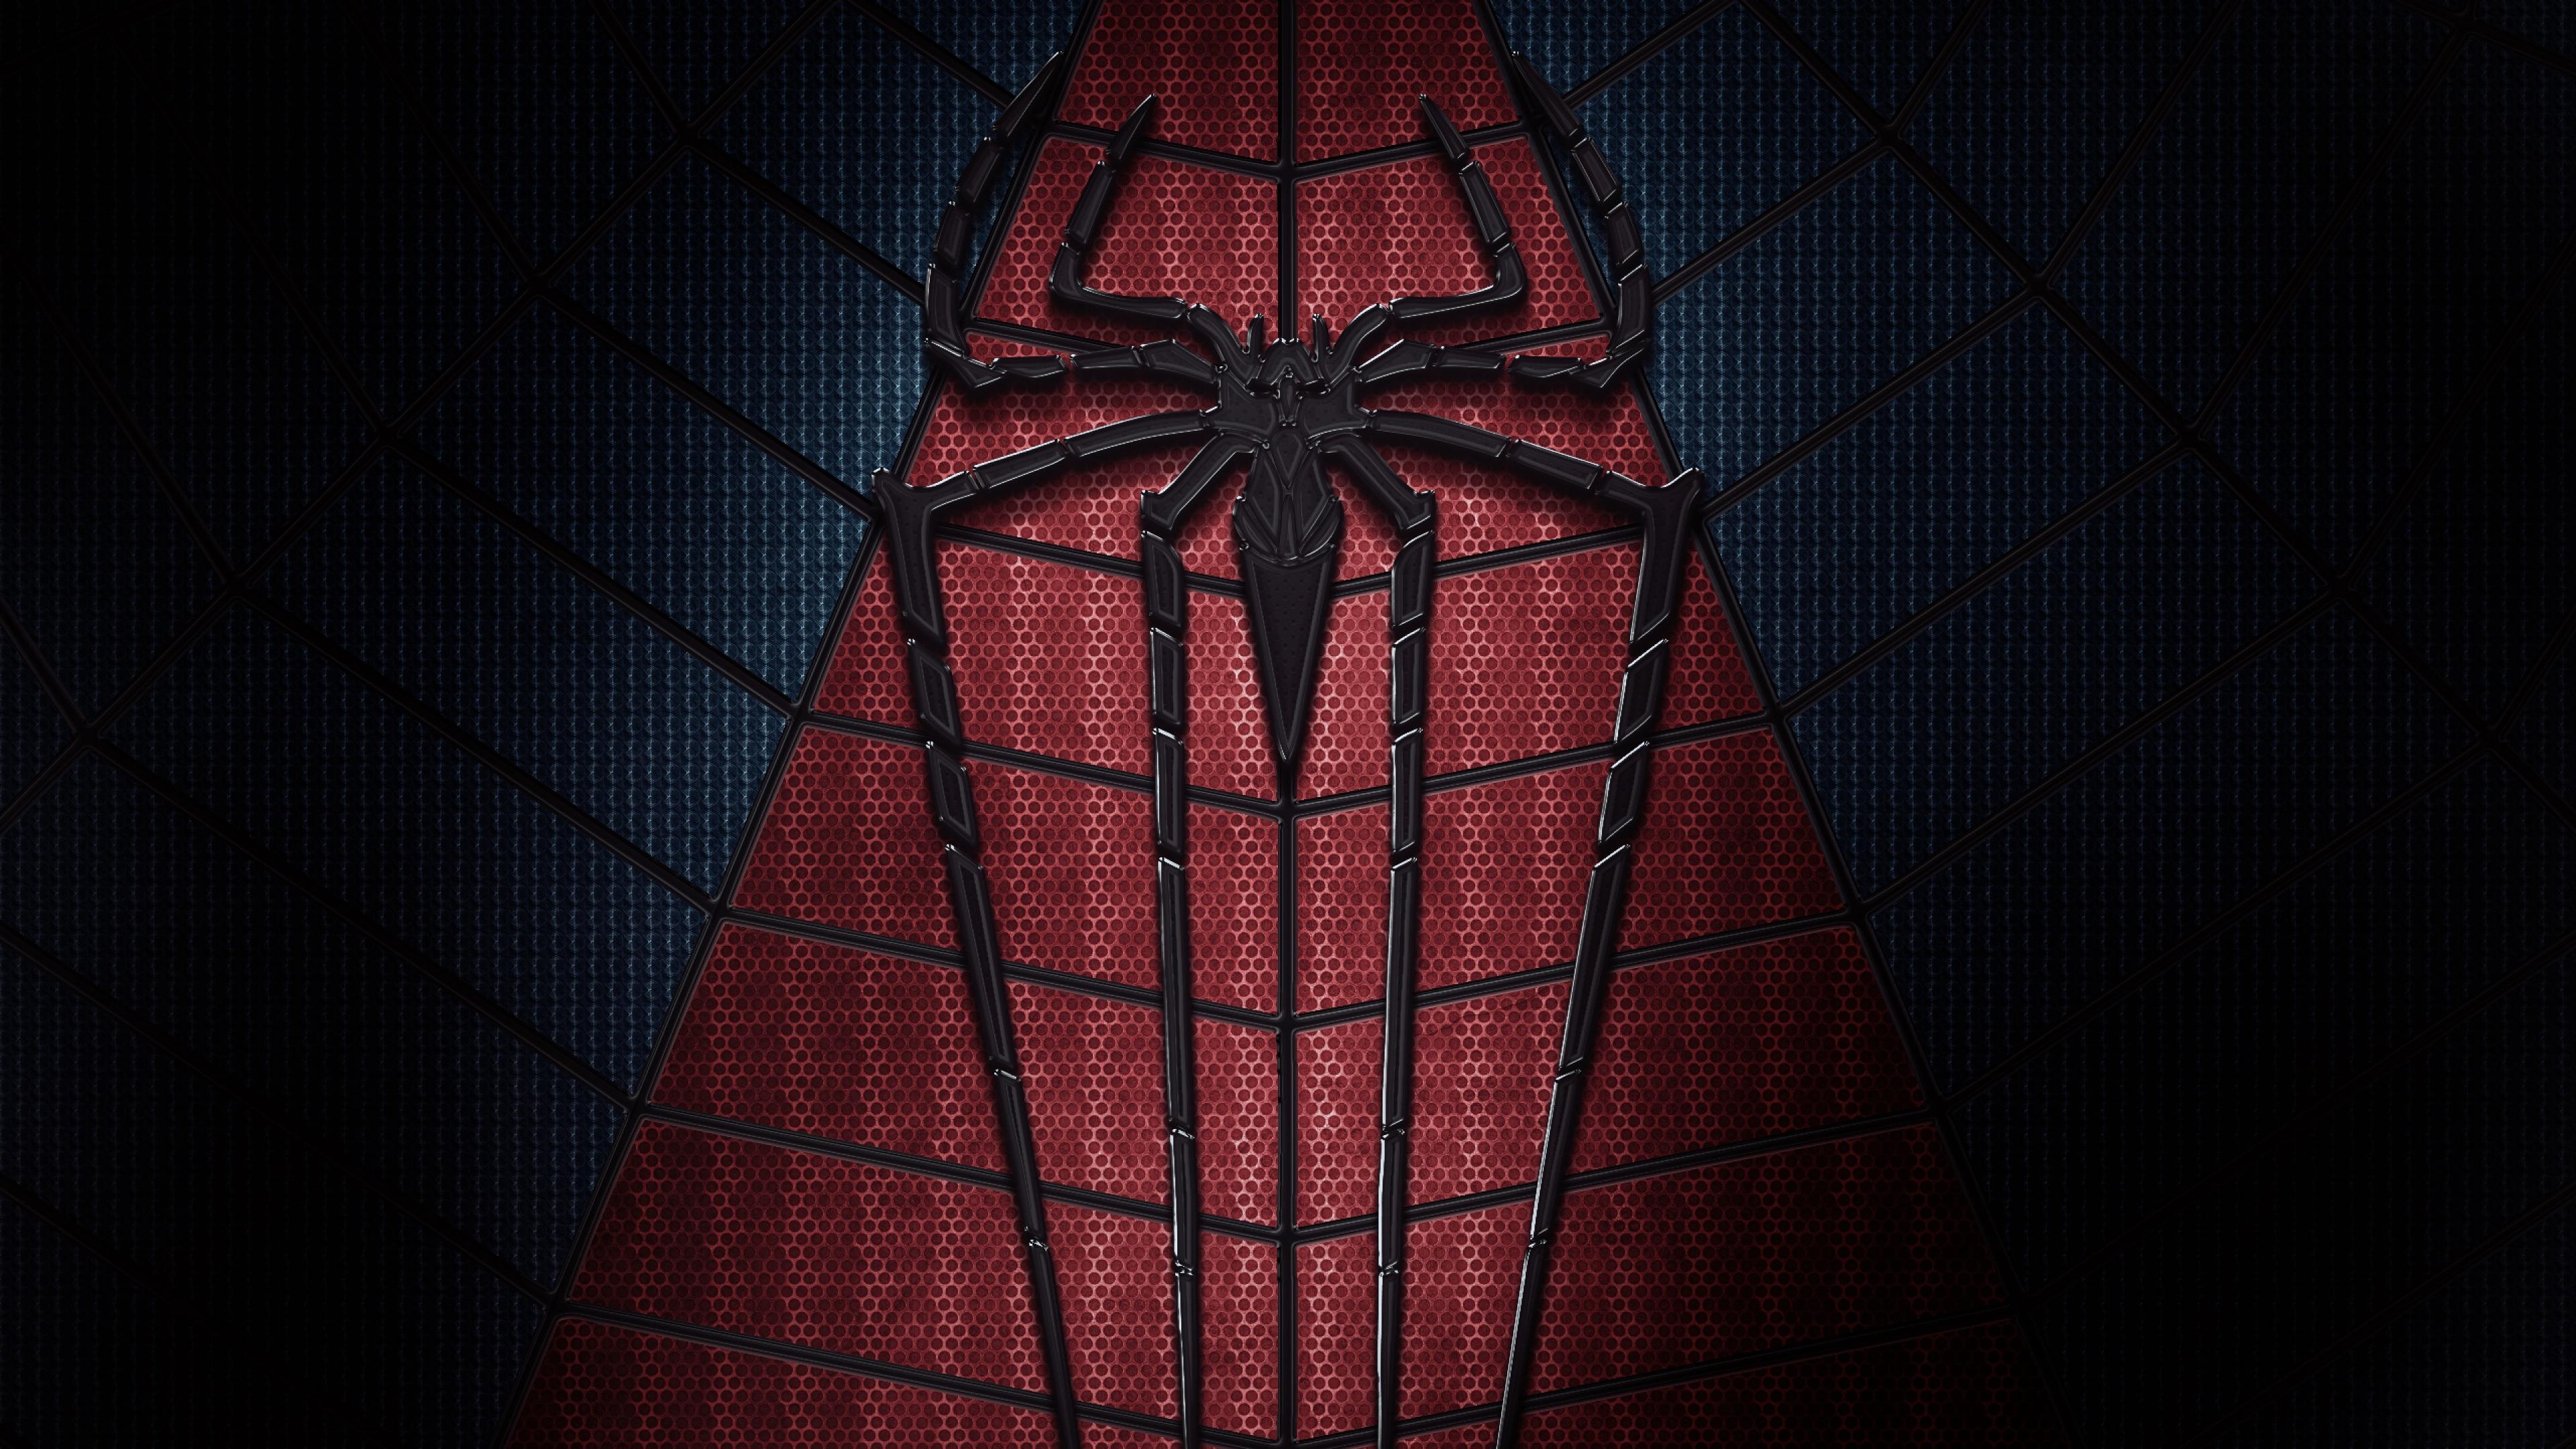 Free download Marvels Spider Man Game Wallpaper 4K HD PC 7970i [3840x2160]  for your Desktop, Mobile & Tablet